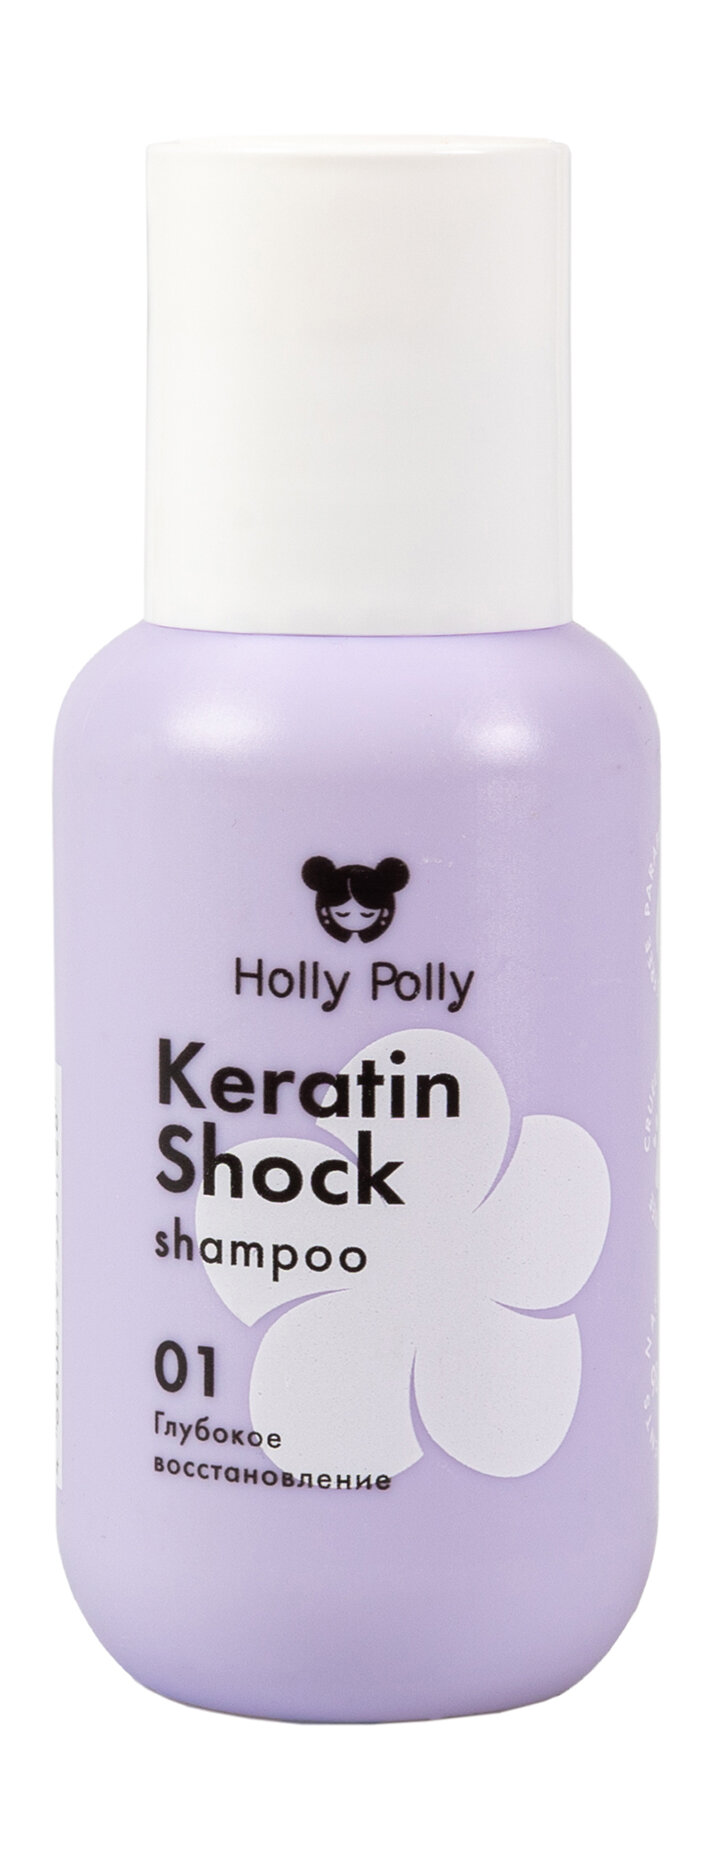 HOLLY POLLY Шампунь восстанавливающий Holly Polly Keratin Shock, 65 мл